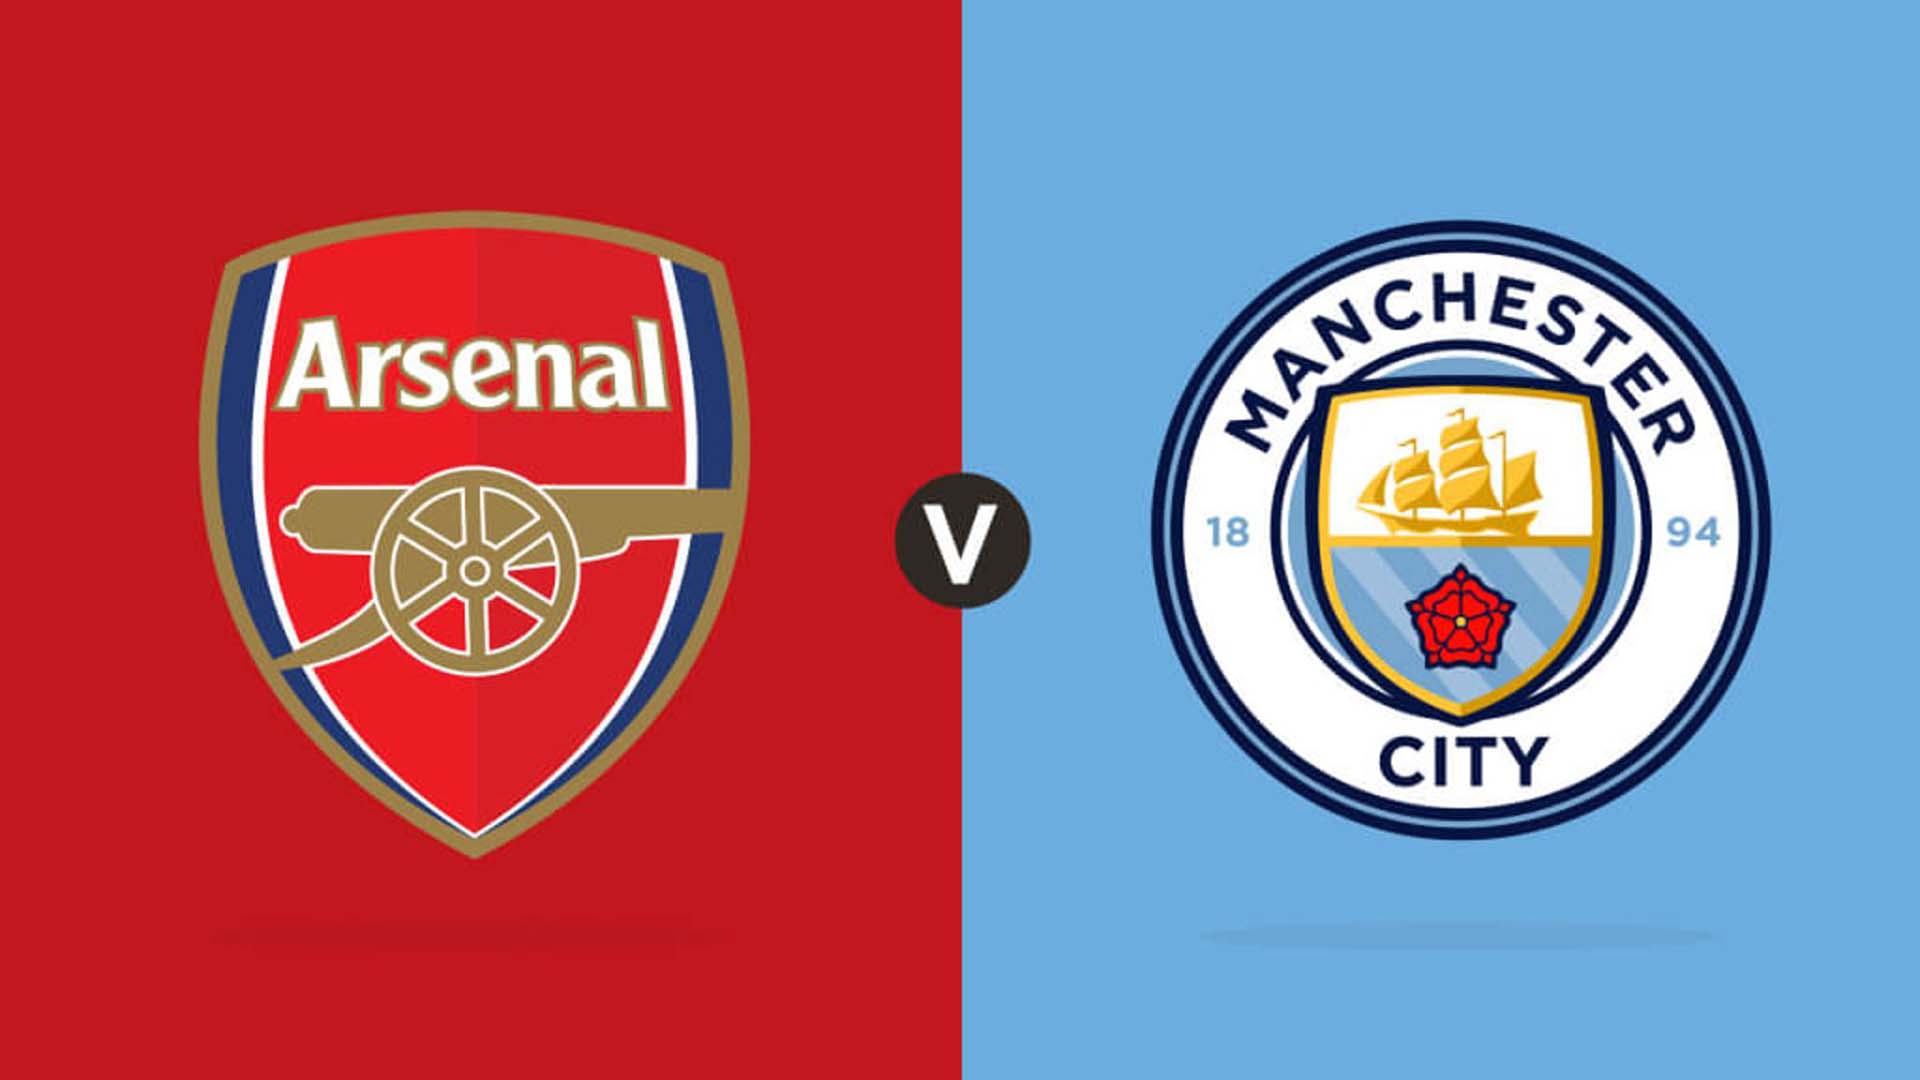 İngiltere Premier Lig: Arsenal - Manchester City canlı izle | Arsenal - Manchester City maçı S Sport, S Sport Plus canlı yayın izle linki